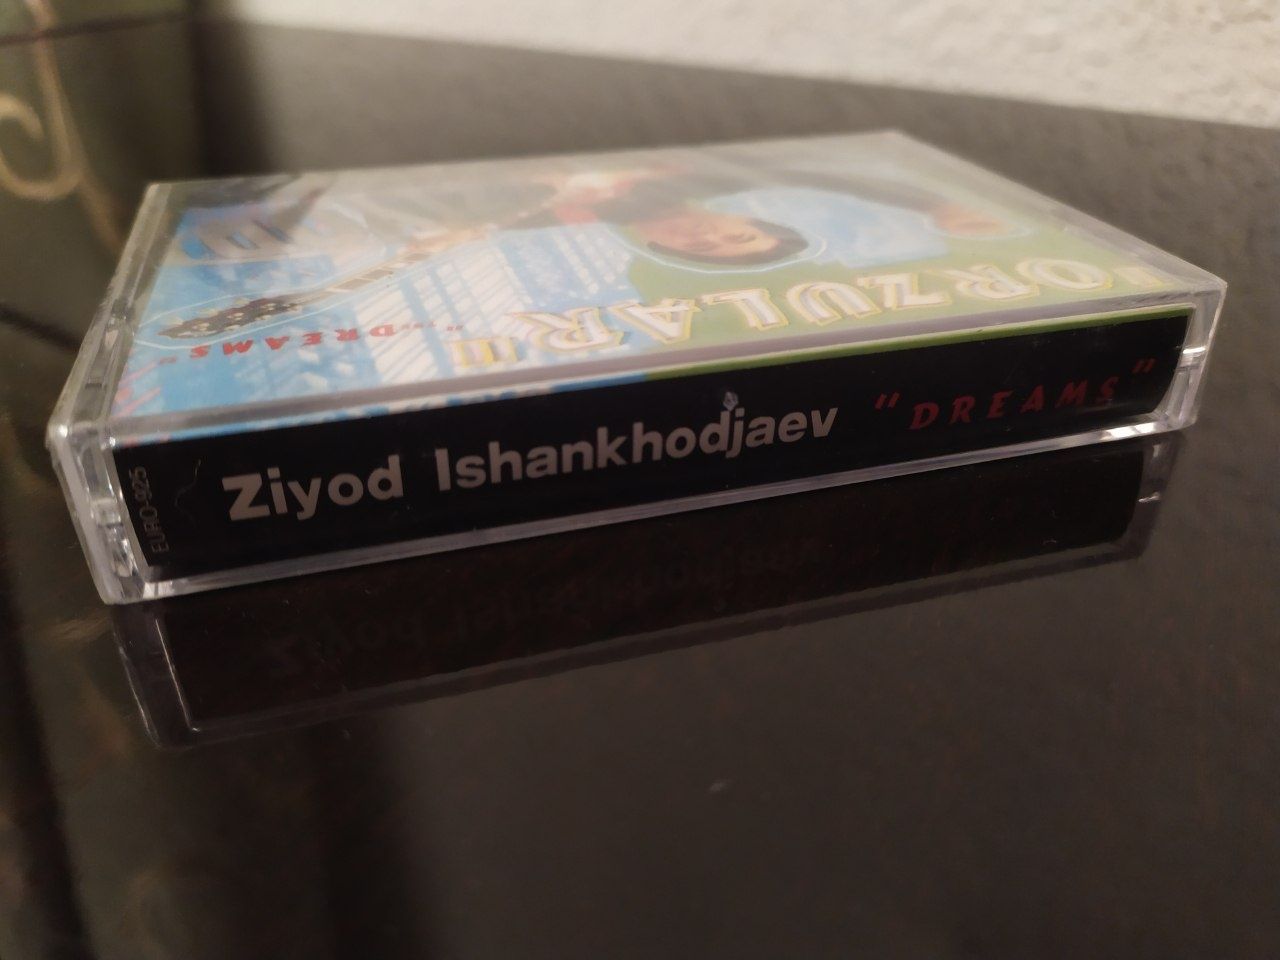 Аудио кассета Зиеда Ишанходжаева альбом "Орзулар".